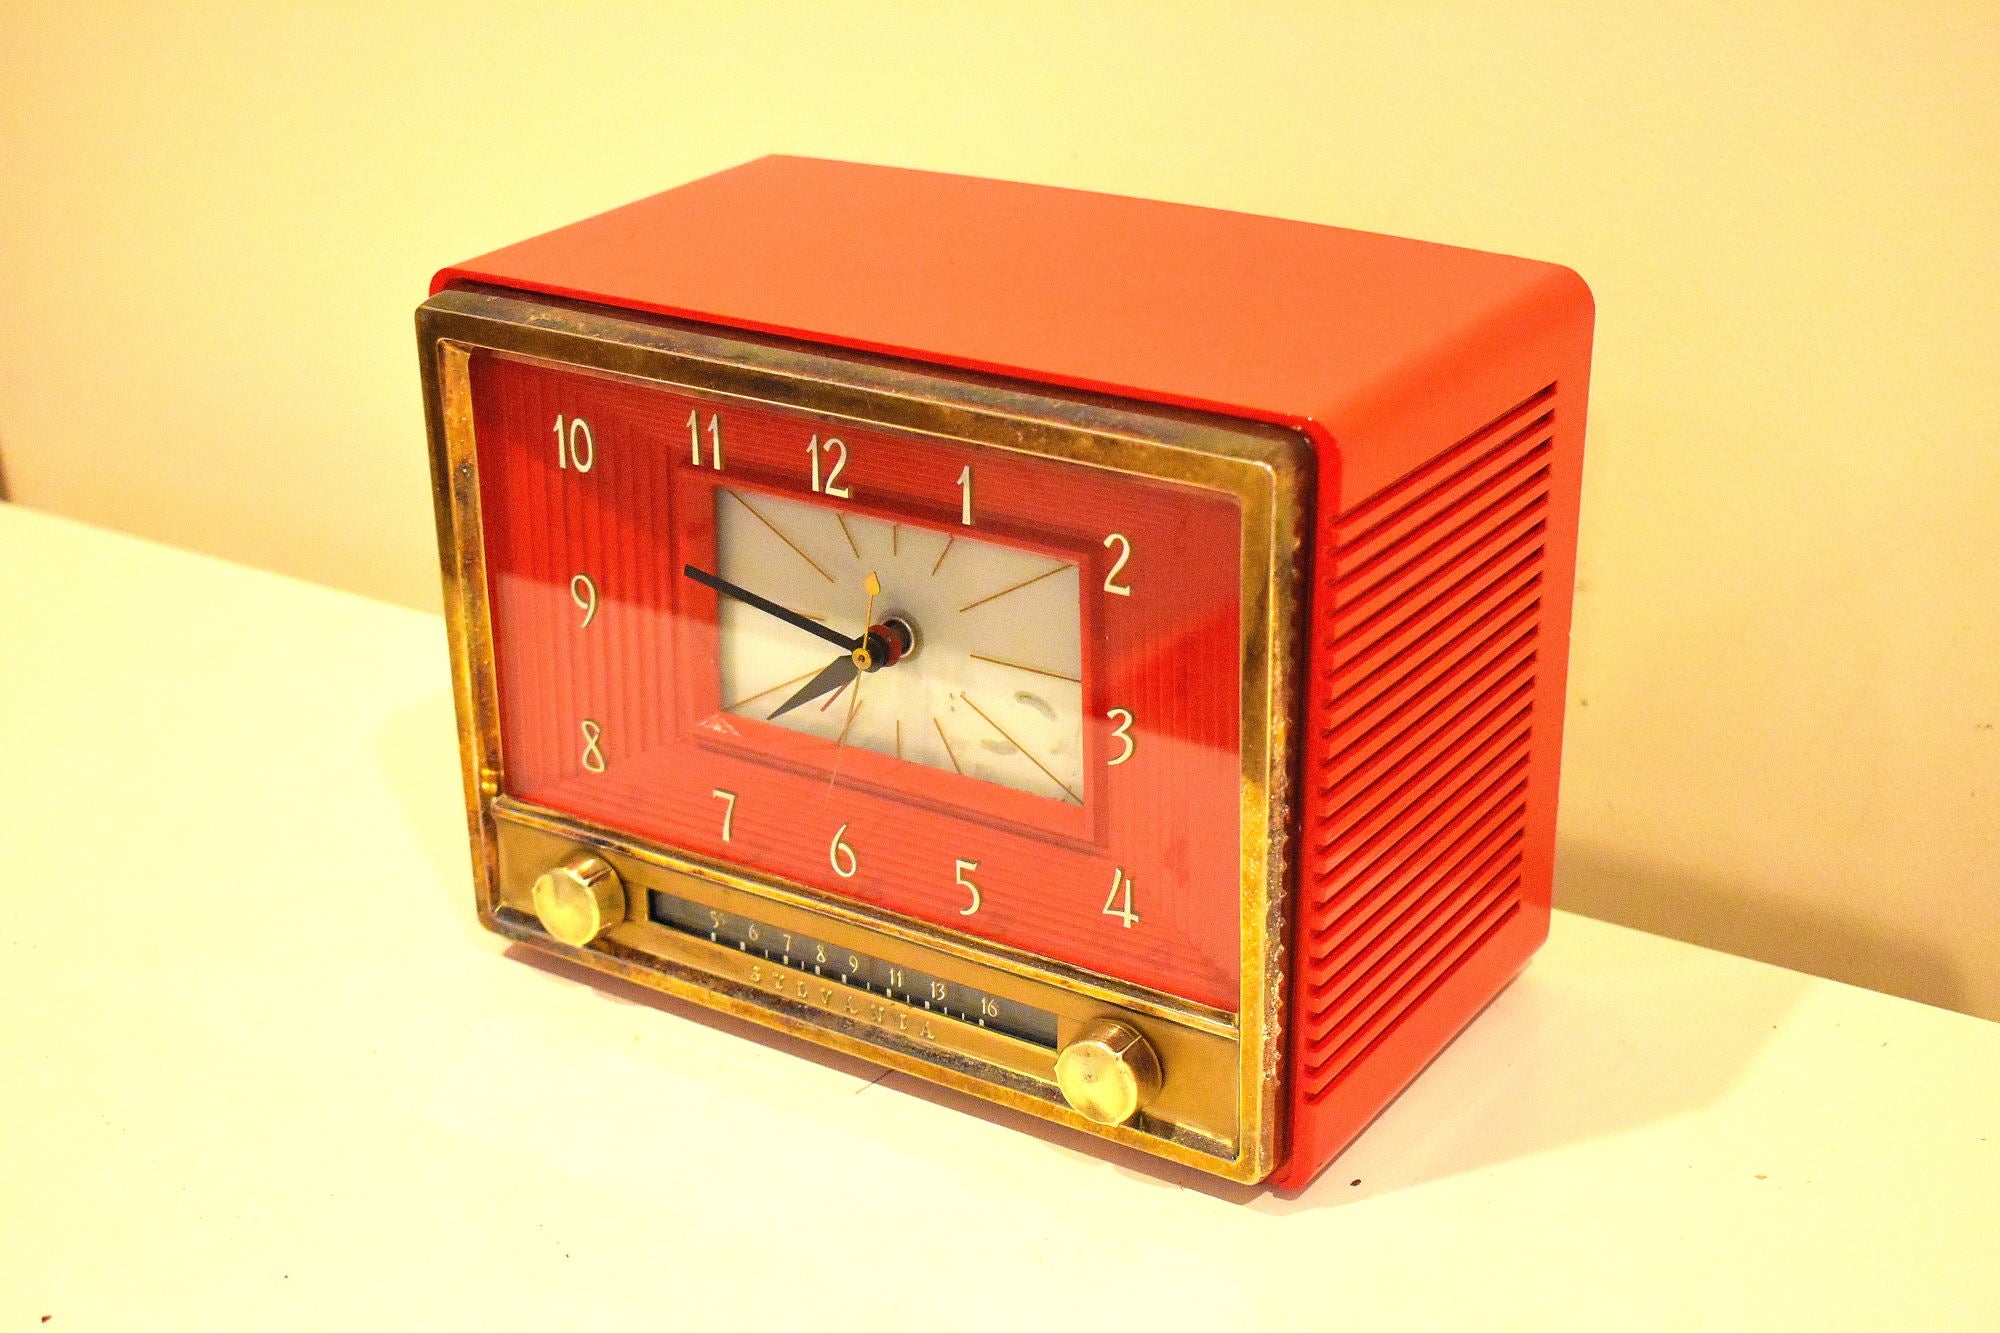 ドラグーンレッド 1953 シルバニア モデル 543 真空管 AM 時計ラジオ レアカラー しっかりとした品質の構造!